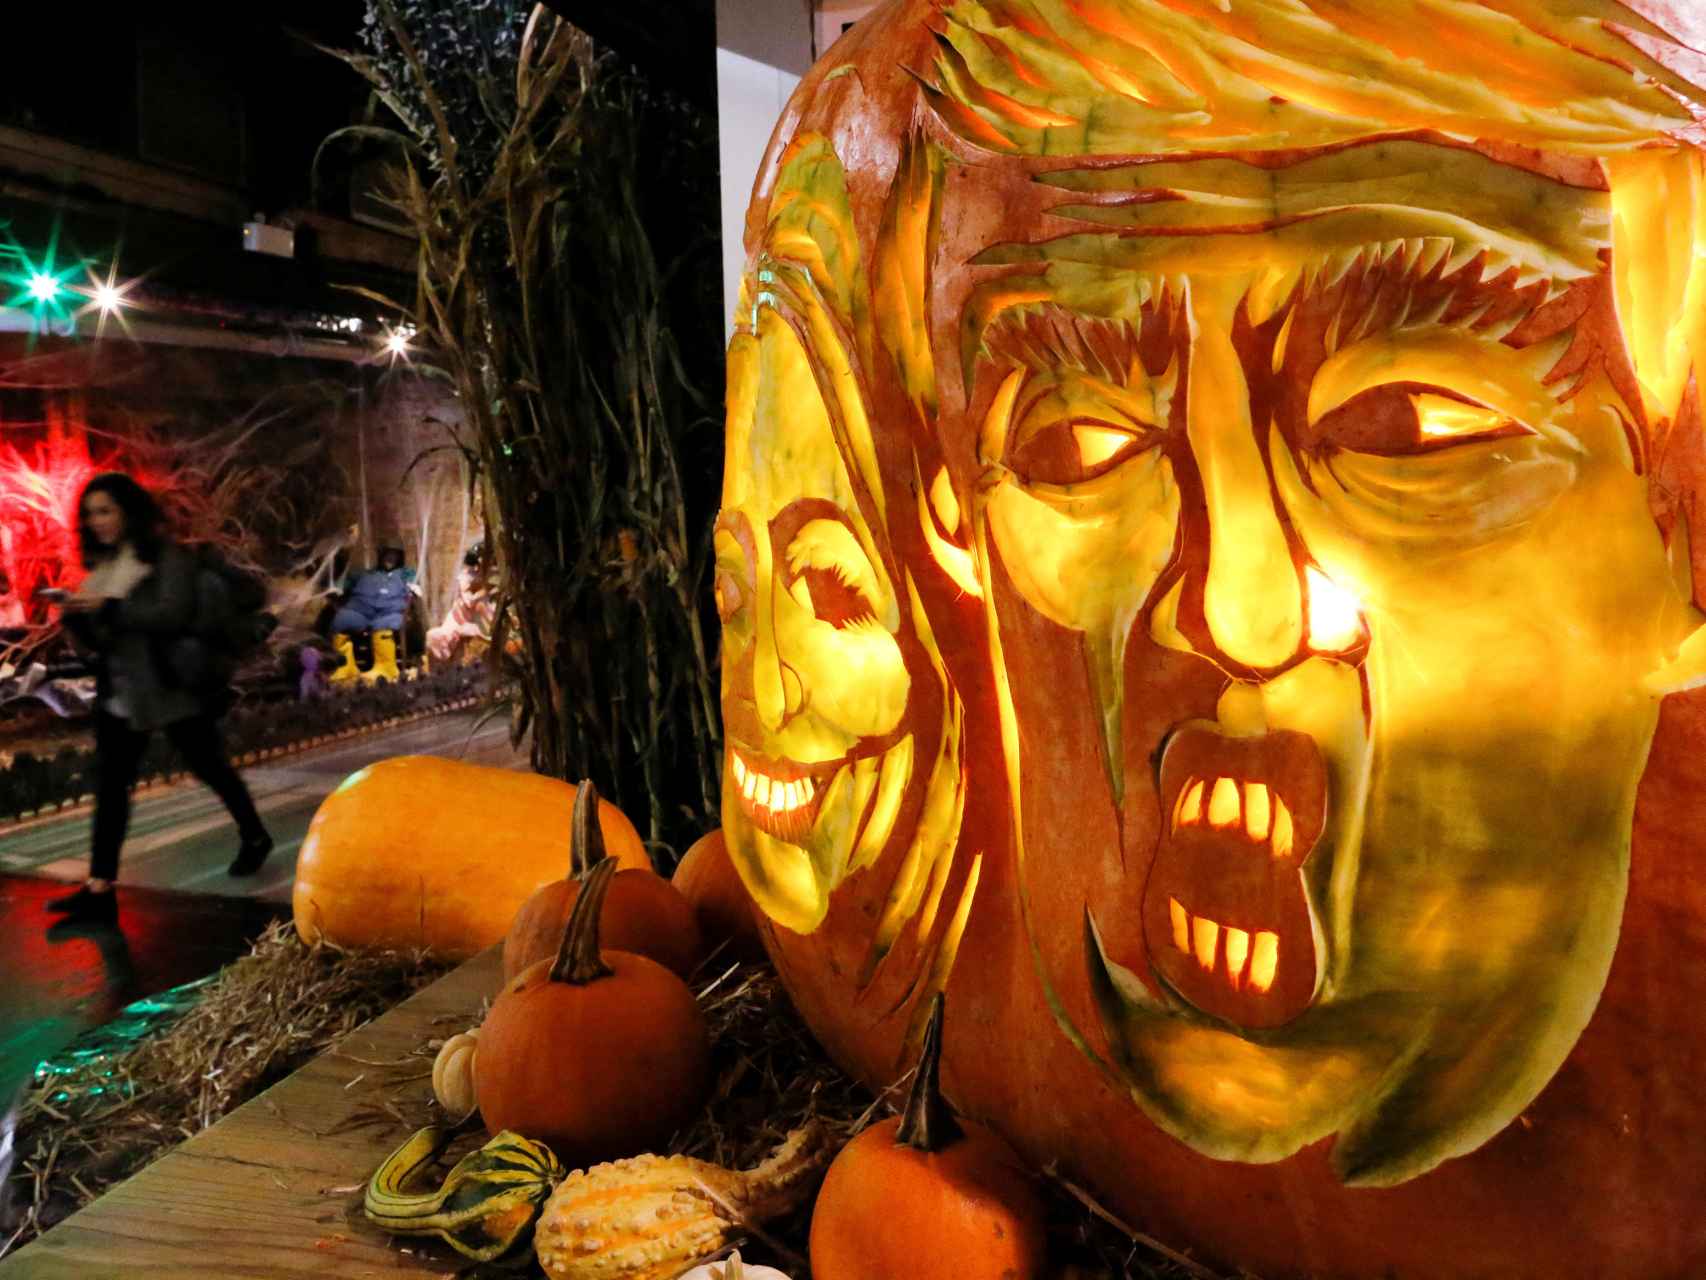 Trump y Clinton, representados en una calabaza, decoración típica de Halloween.